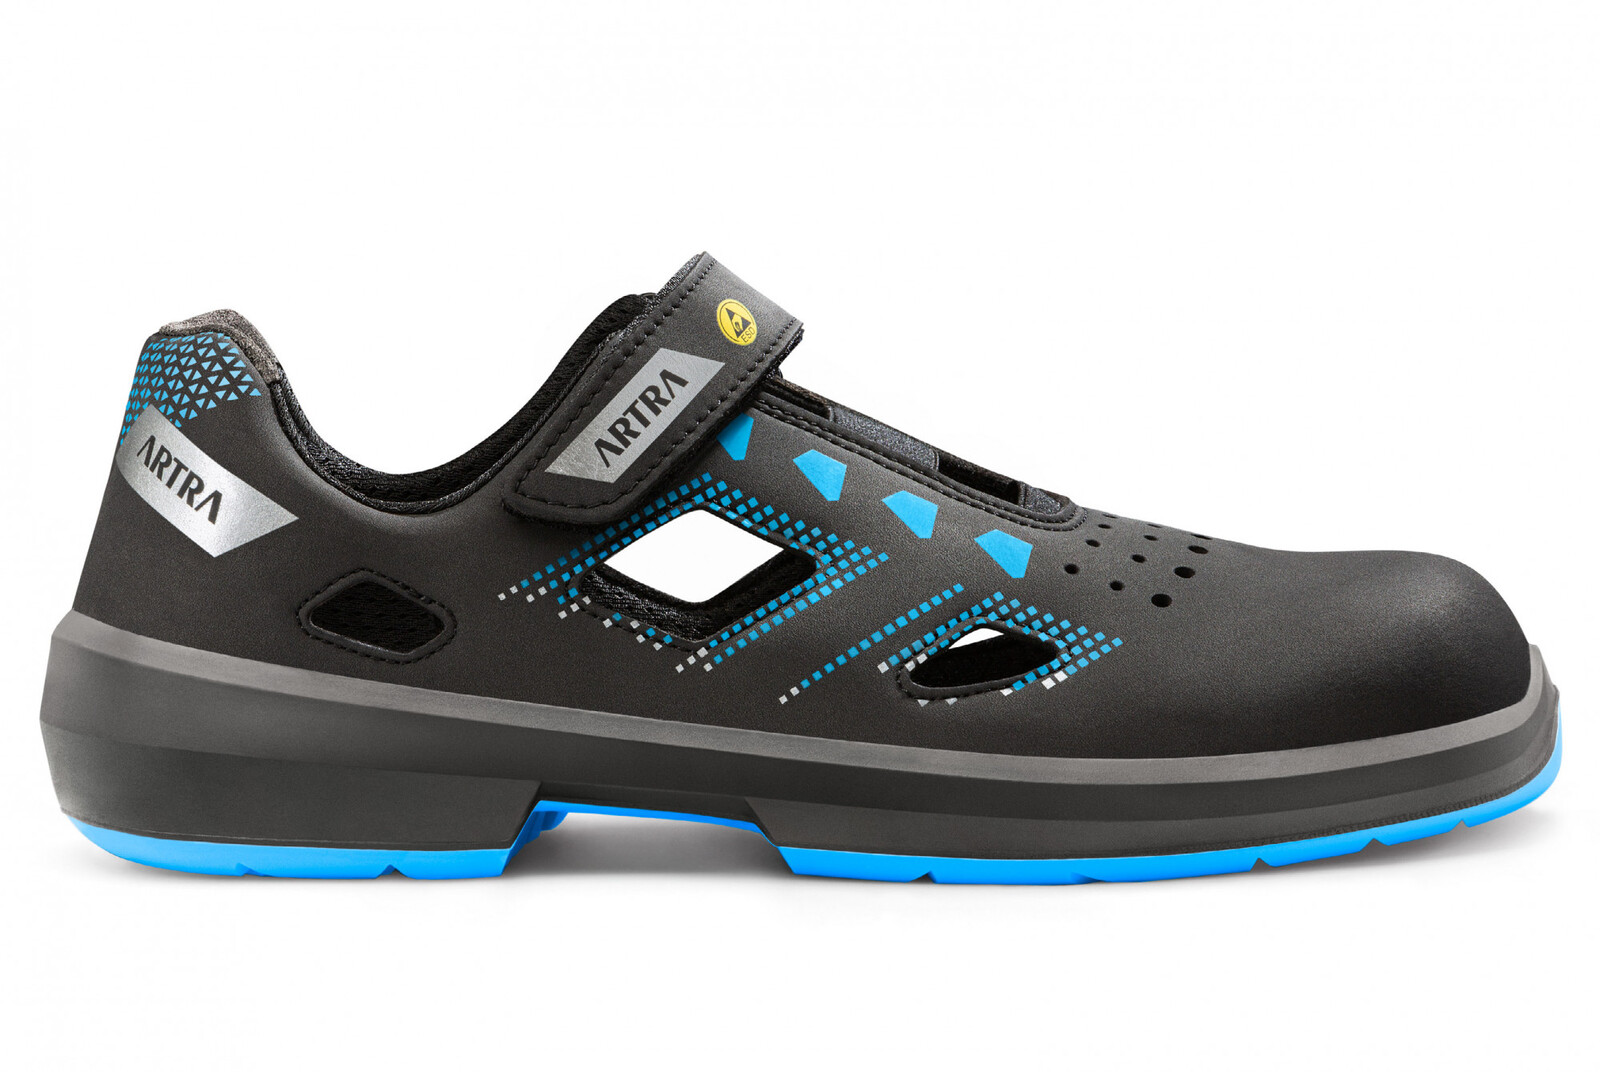 Bezpečnostné sandále Artra Arzo 805 619090 S1P SRC ESD MF - veľkosť: 40, farba: čierna/modrá